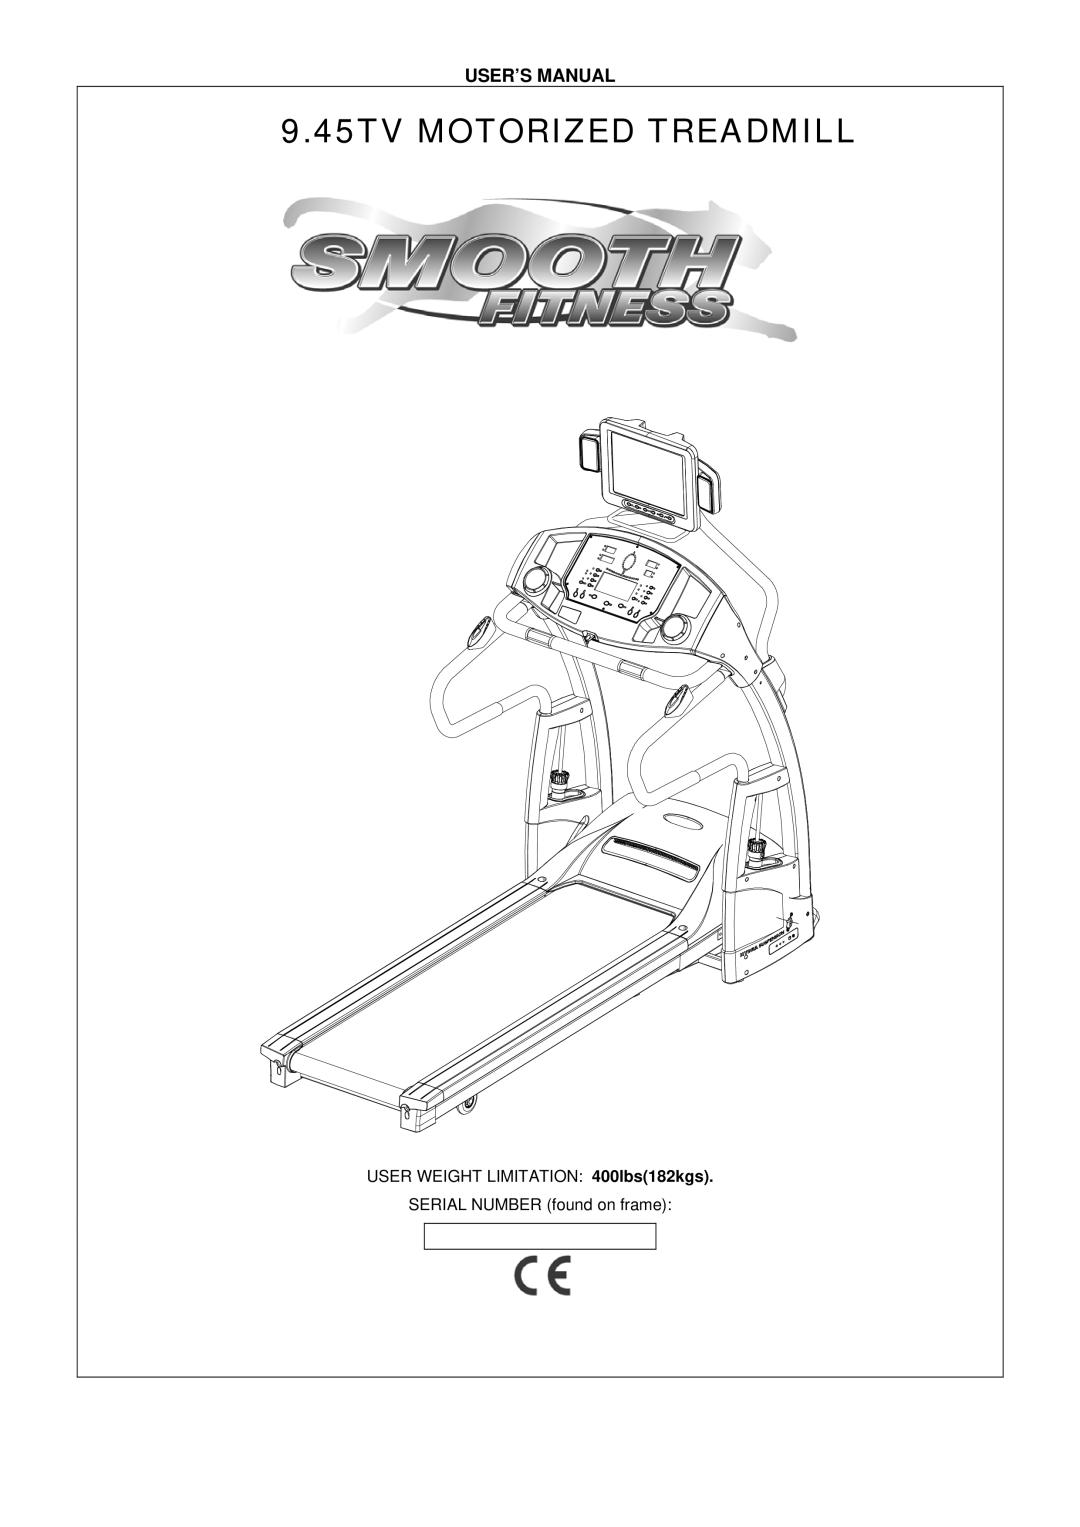 Smooth Fitness 9.45TV user manual 45TV Motorized Treadmill 